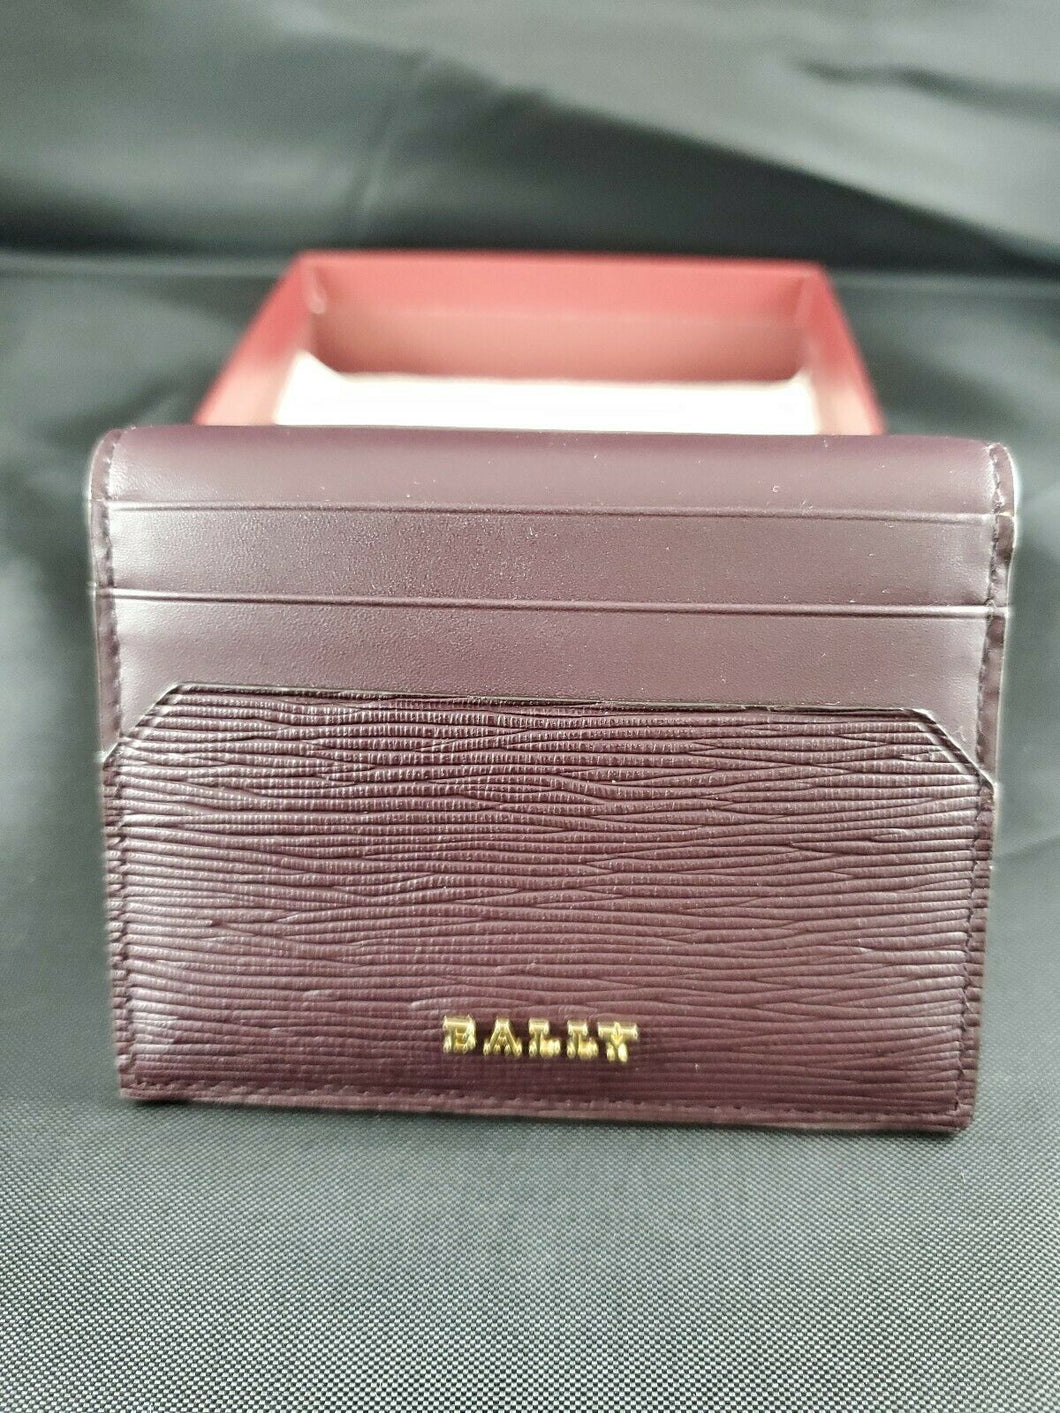 New Bally Lalder Women's 6219177 Merlot Leather Card ID Bifold Wallet MSRP $270